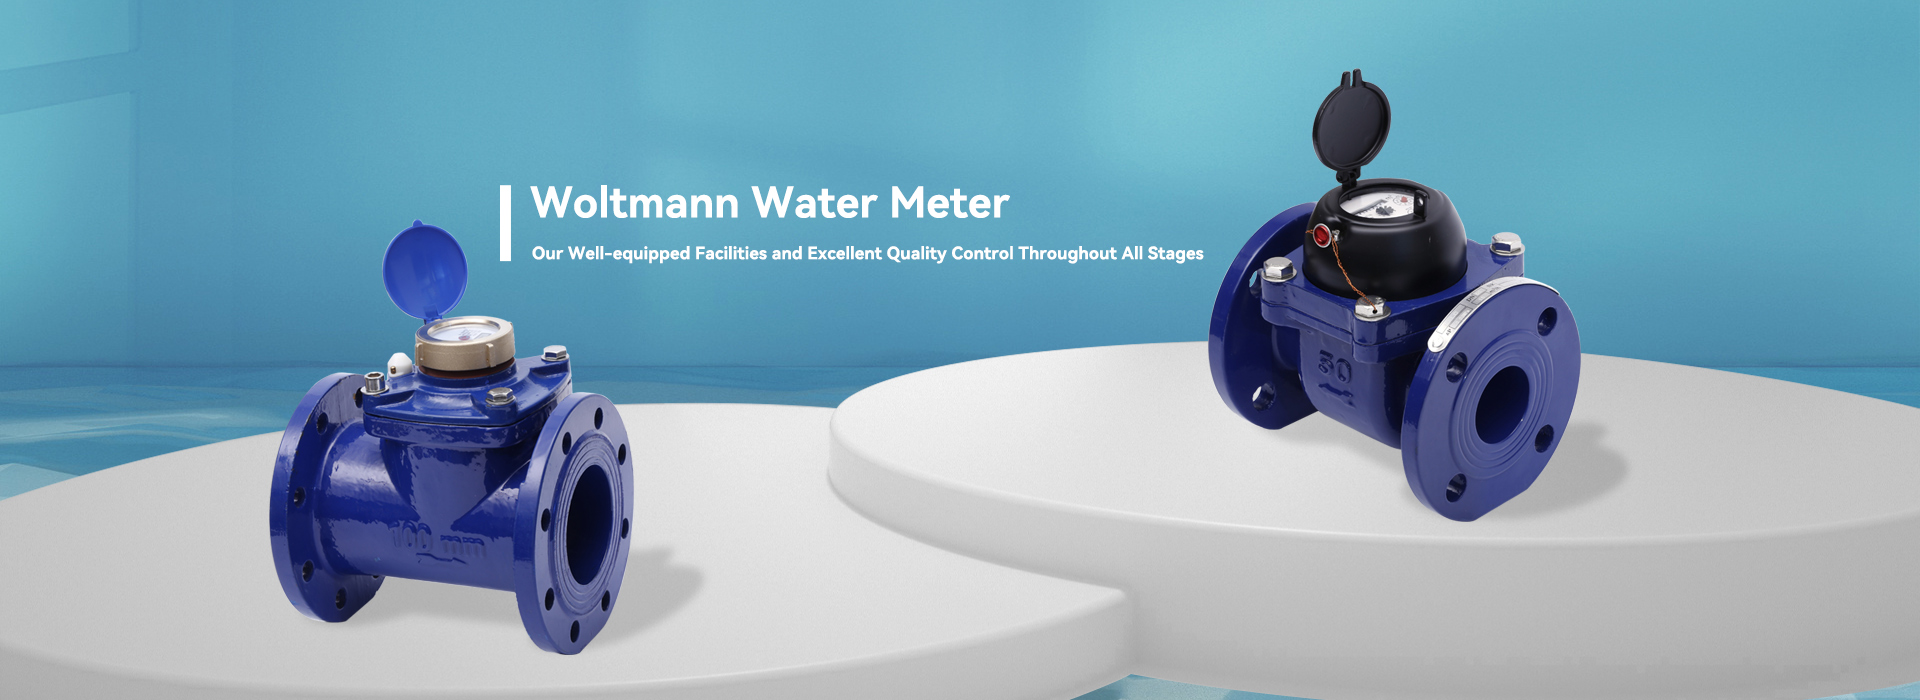 Fabricantes e fornecedores de medidores de água Woltmann